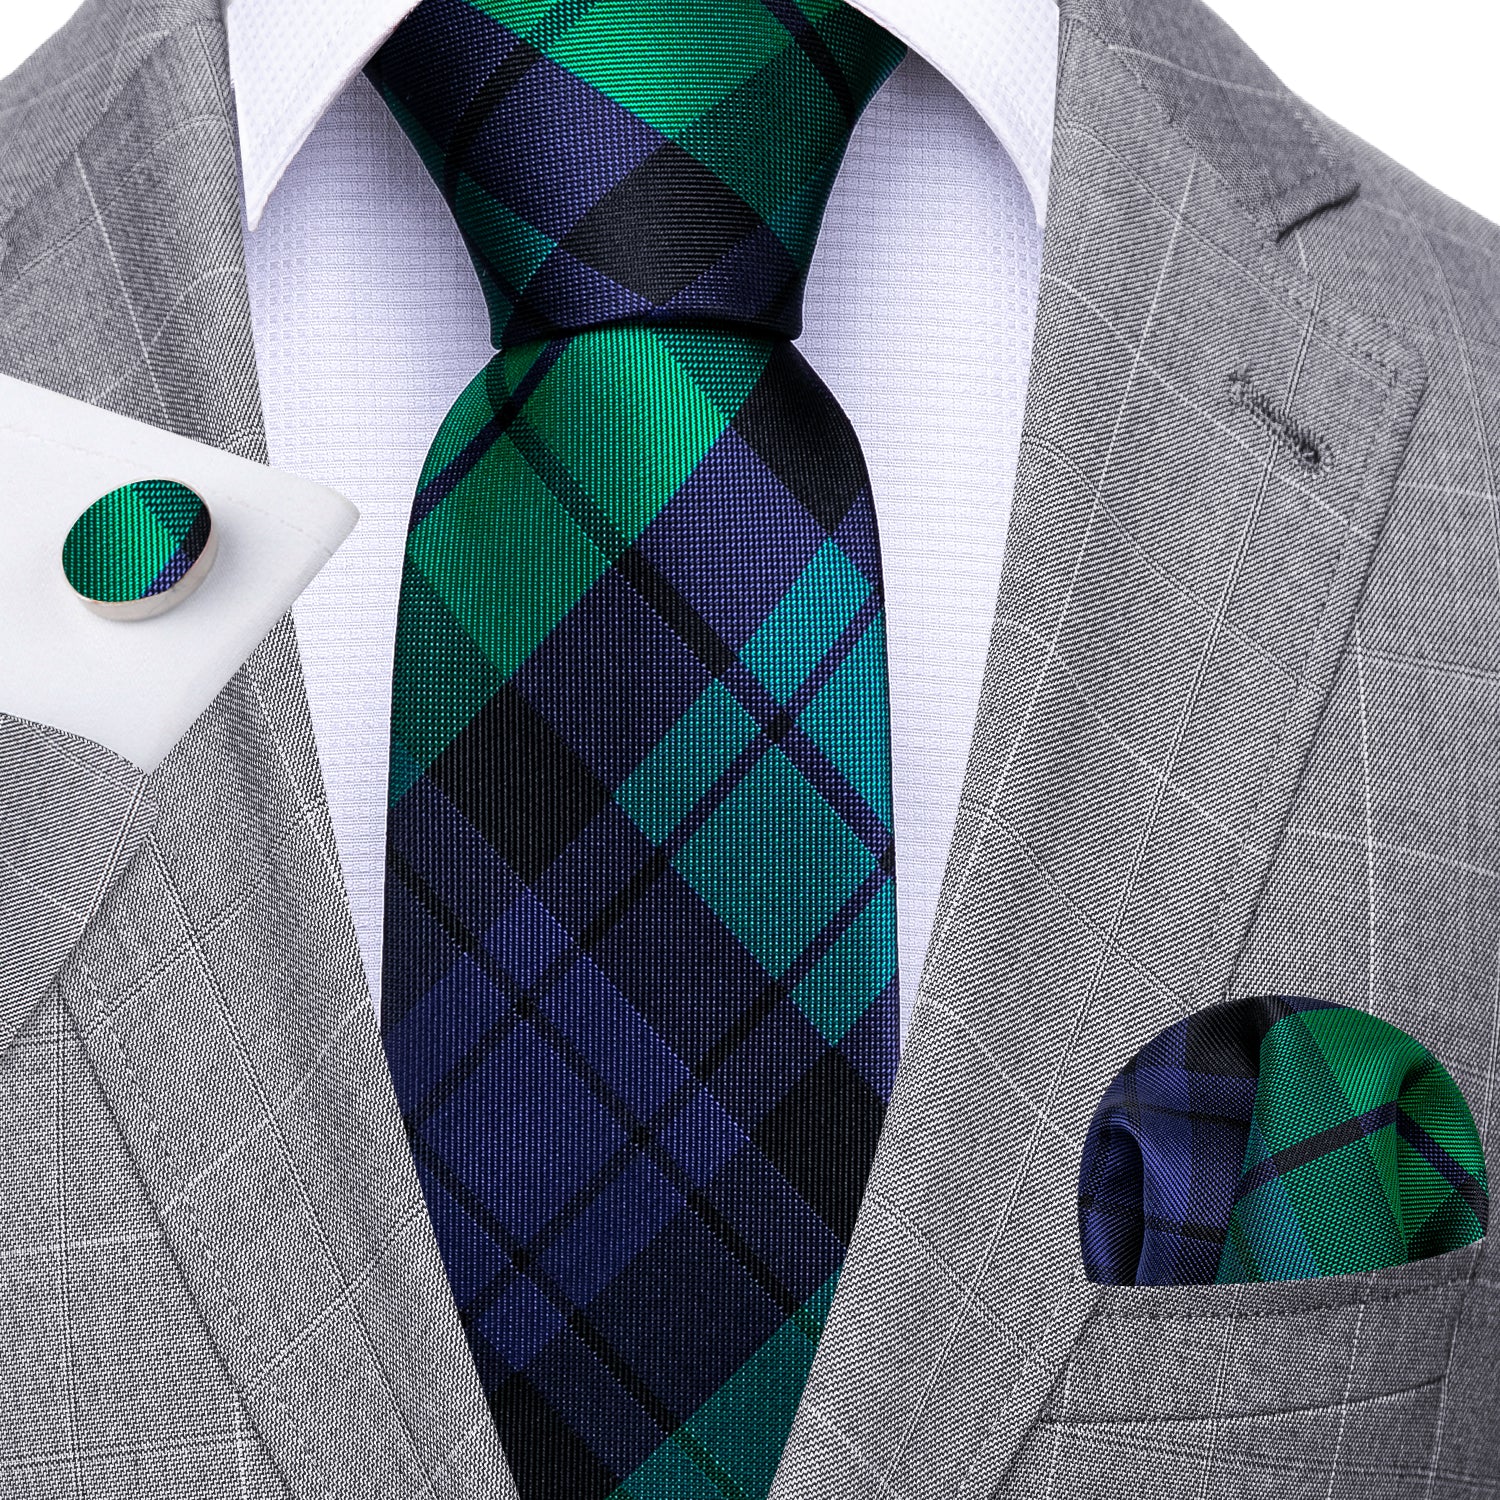 Barry Wang Men's Tie Blue Green Plaid Striped Silk Tie Hanky Cufflinks Set